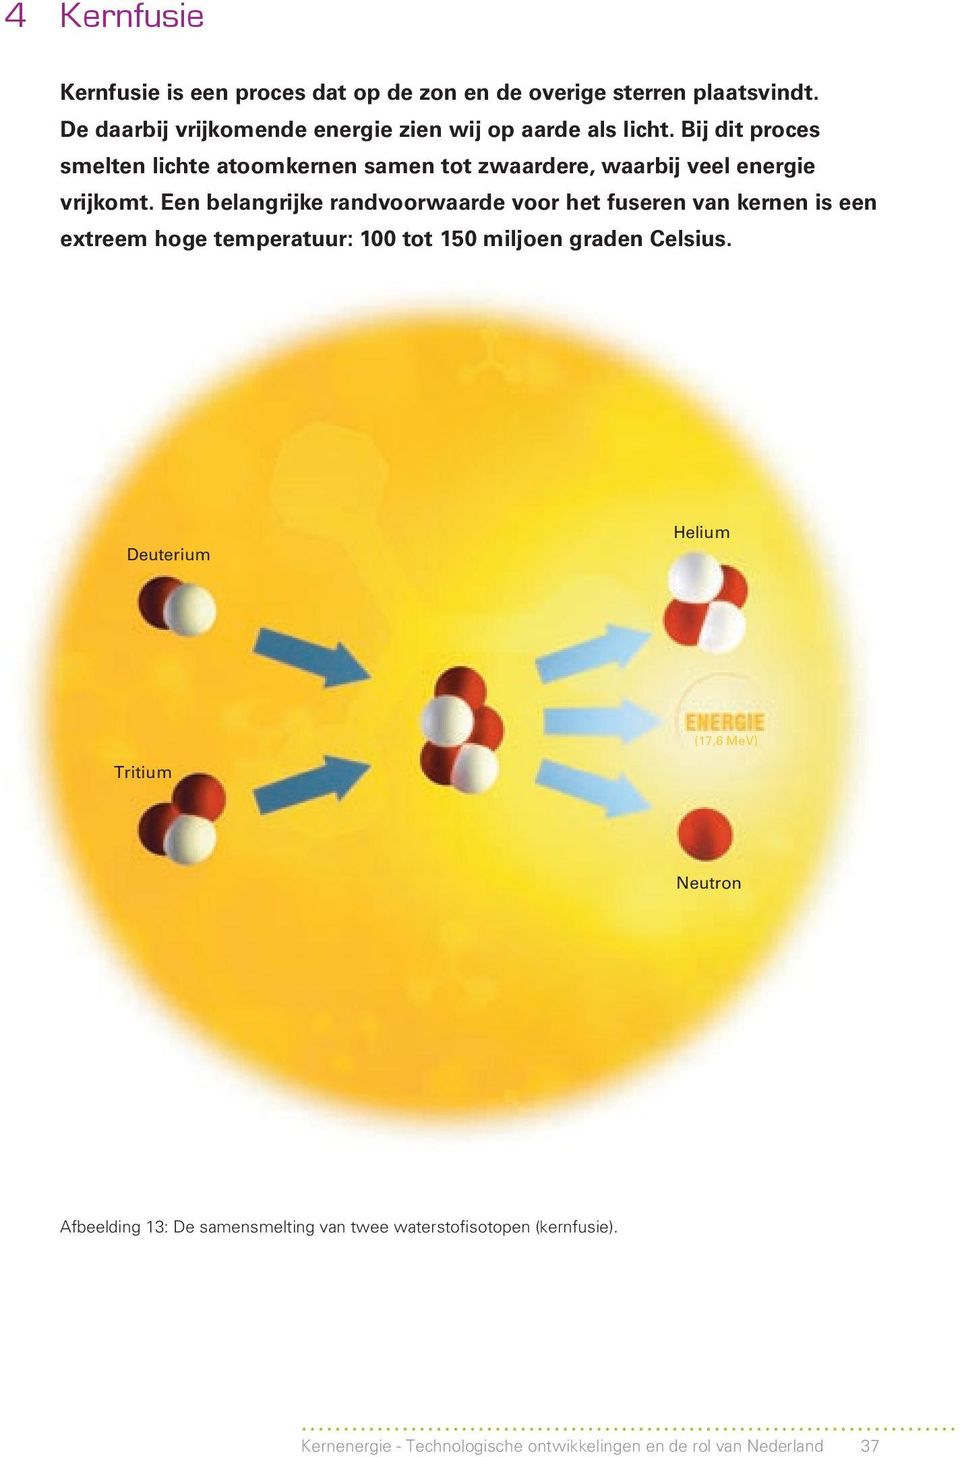 Bij dit proces smelten lichte atoomkernen samen tot zwaardere, waarbij veel energie vrijkomt.